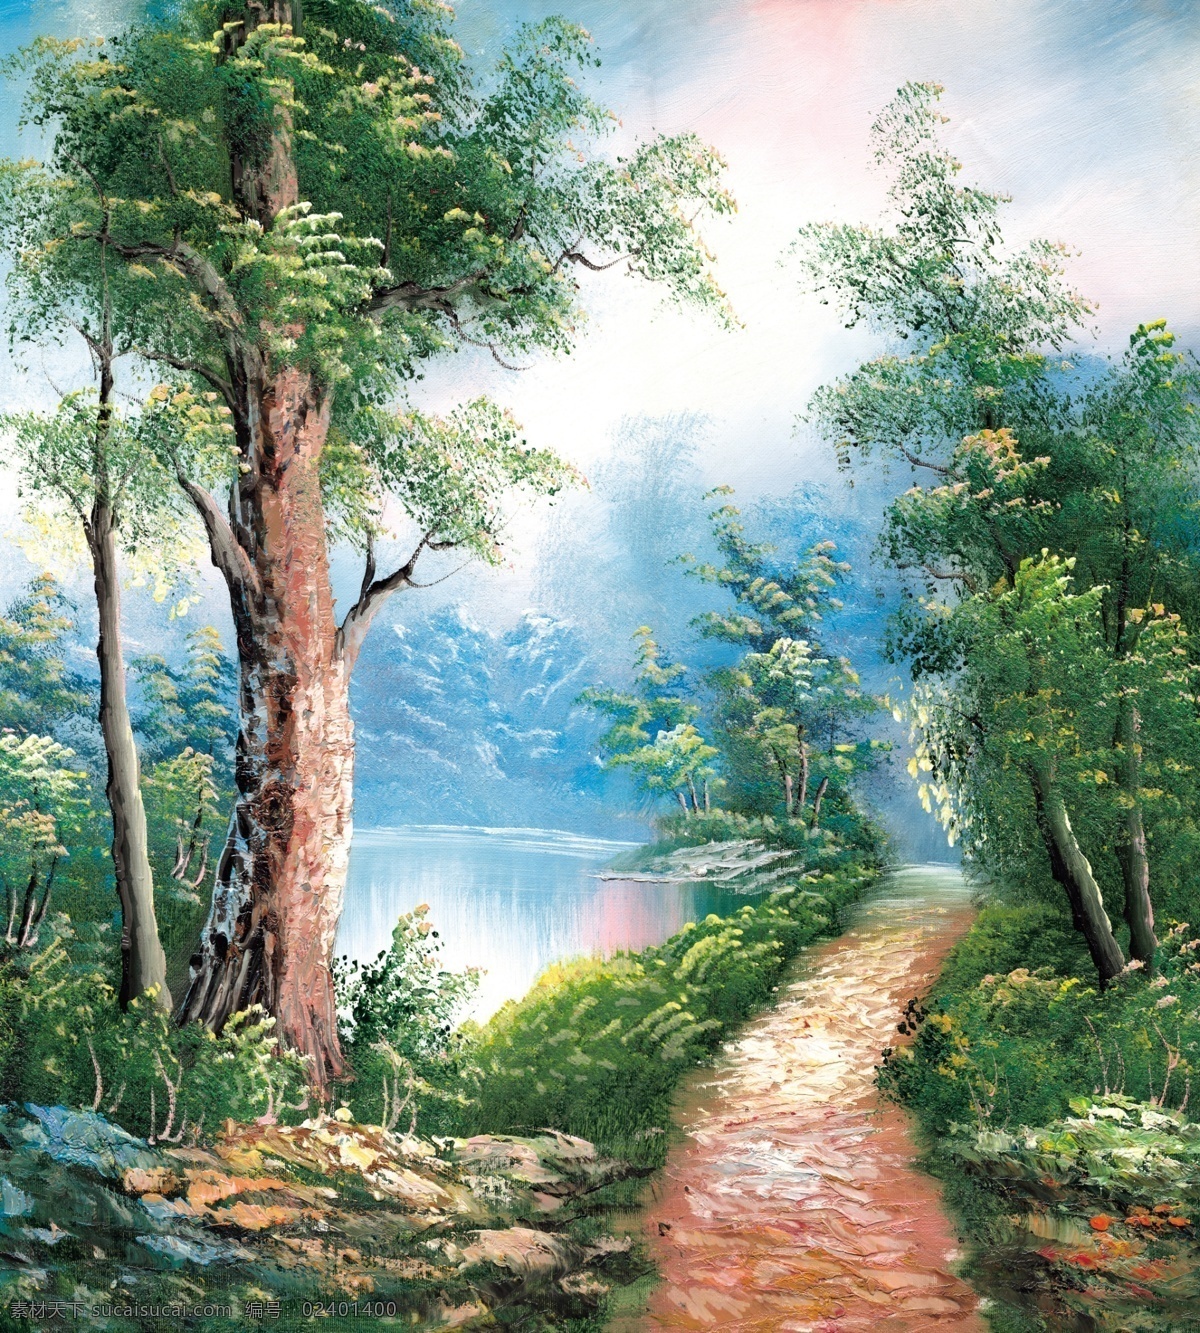 童话 世界 油画 大树 湖 绘画书法 梦境 童话世界 小路 七彩世界 家居装饰素材